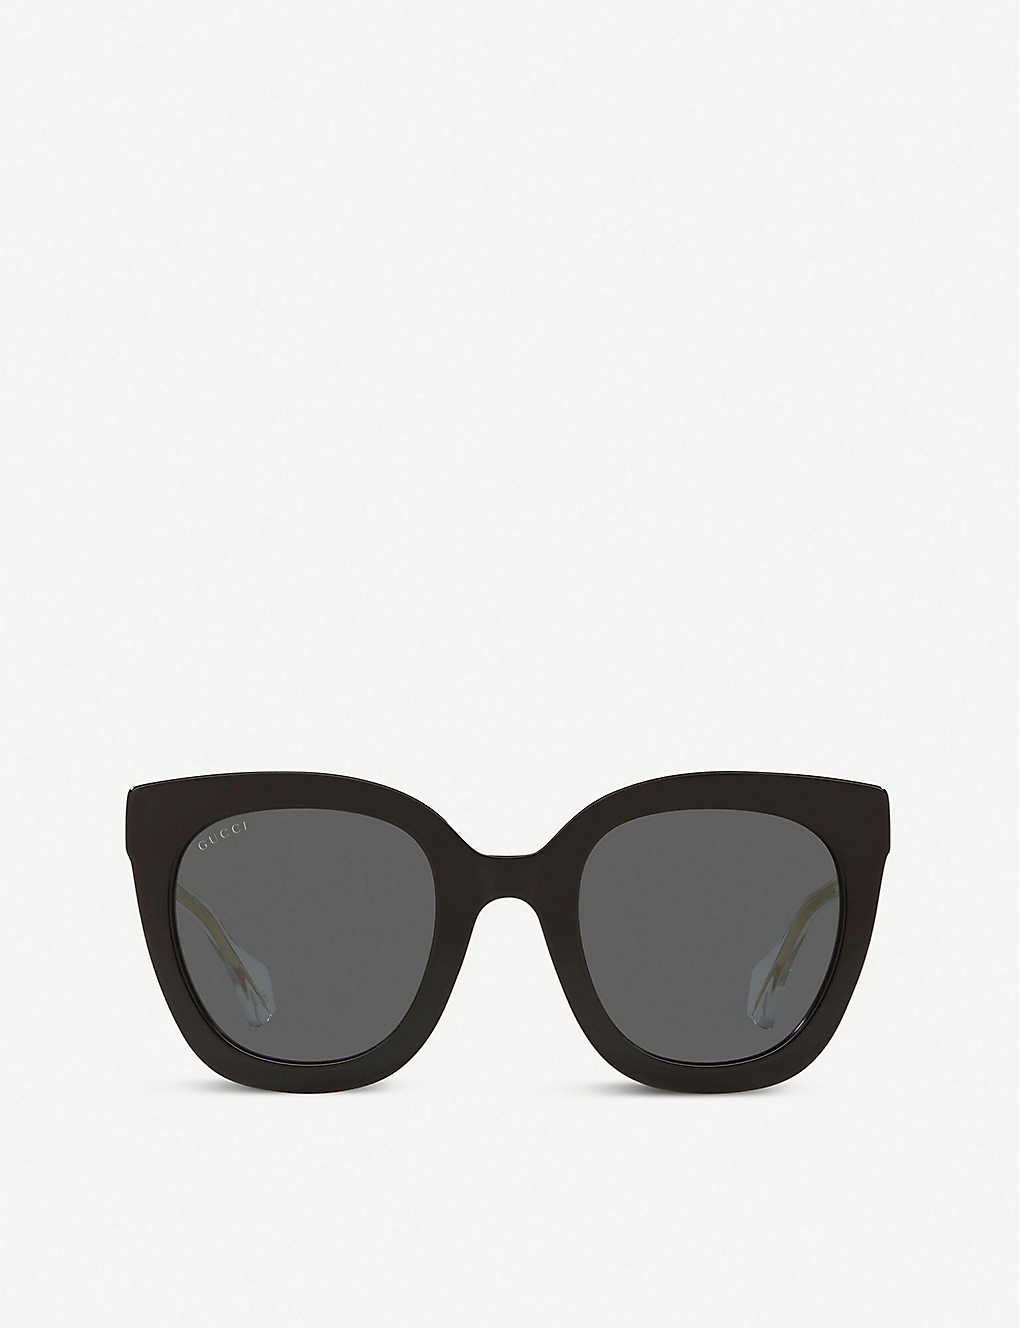 GG0564S square sunglasses(8453277)